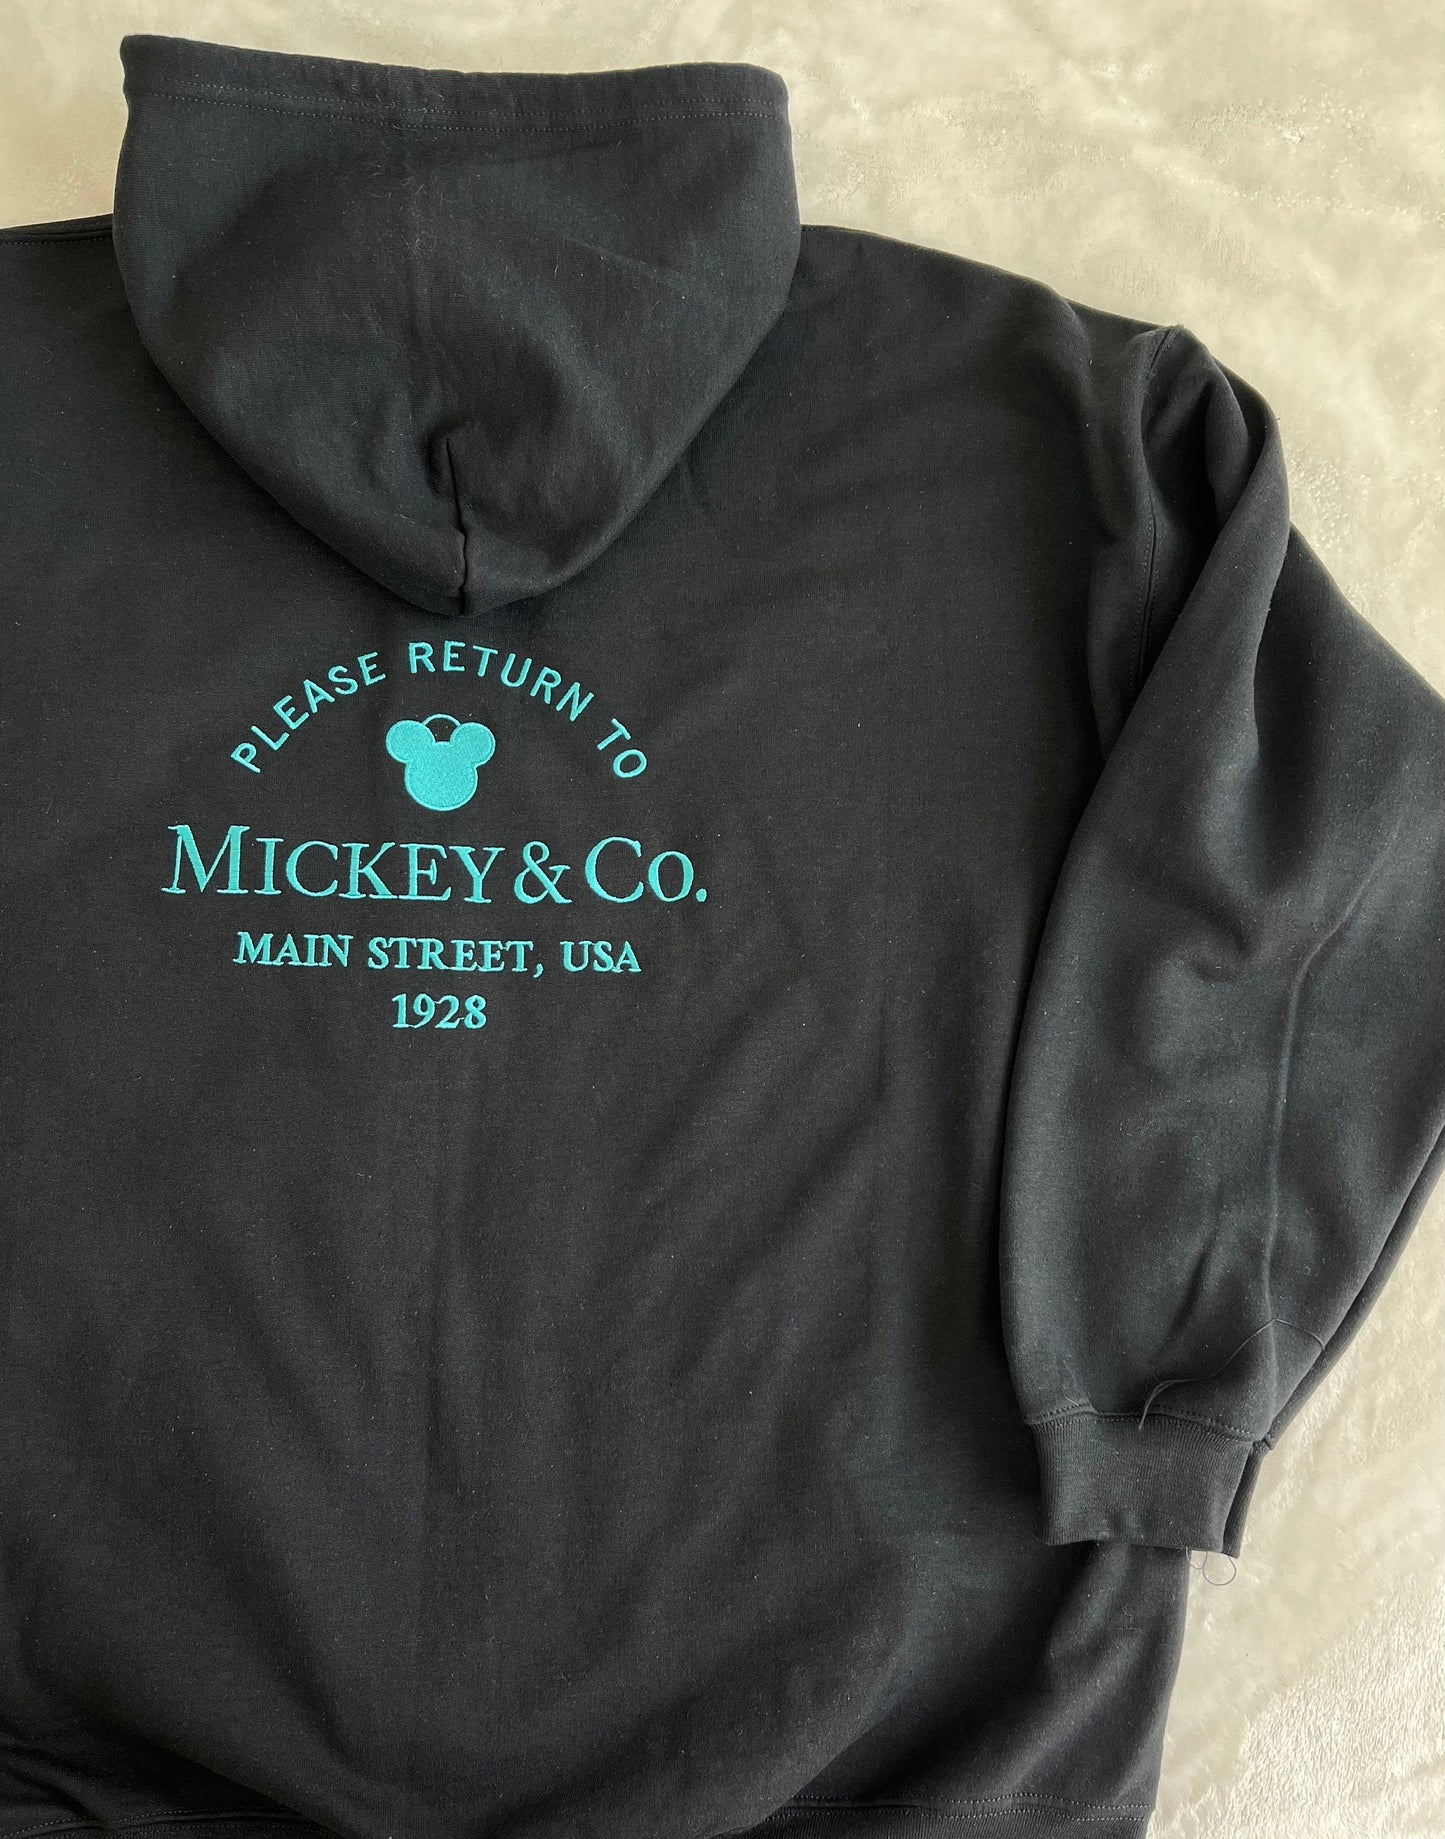 Return to Mickey Minnie & Co Jacket